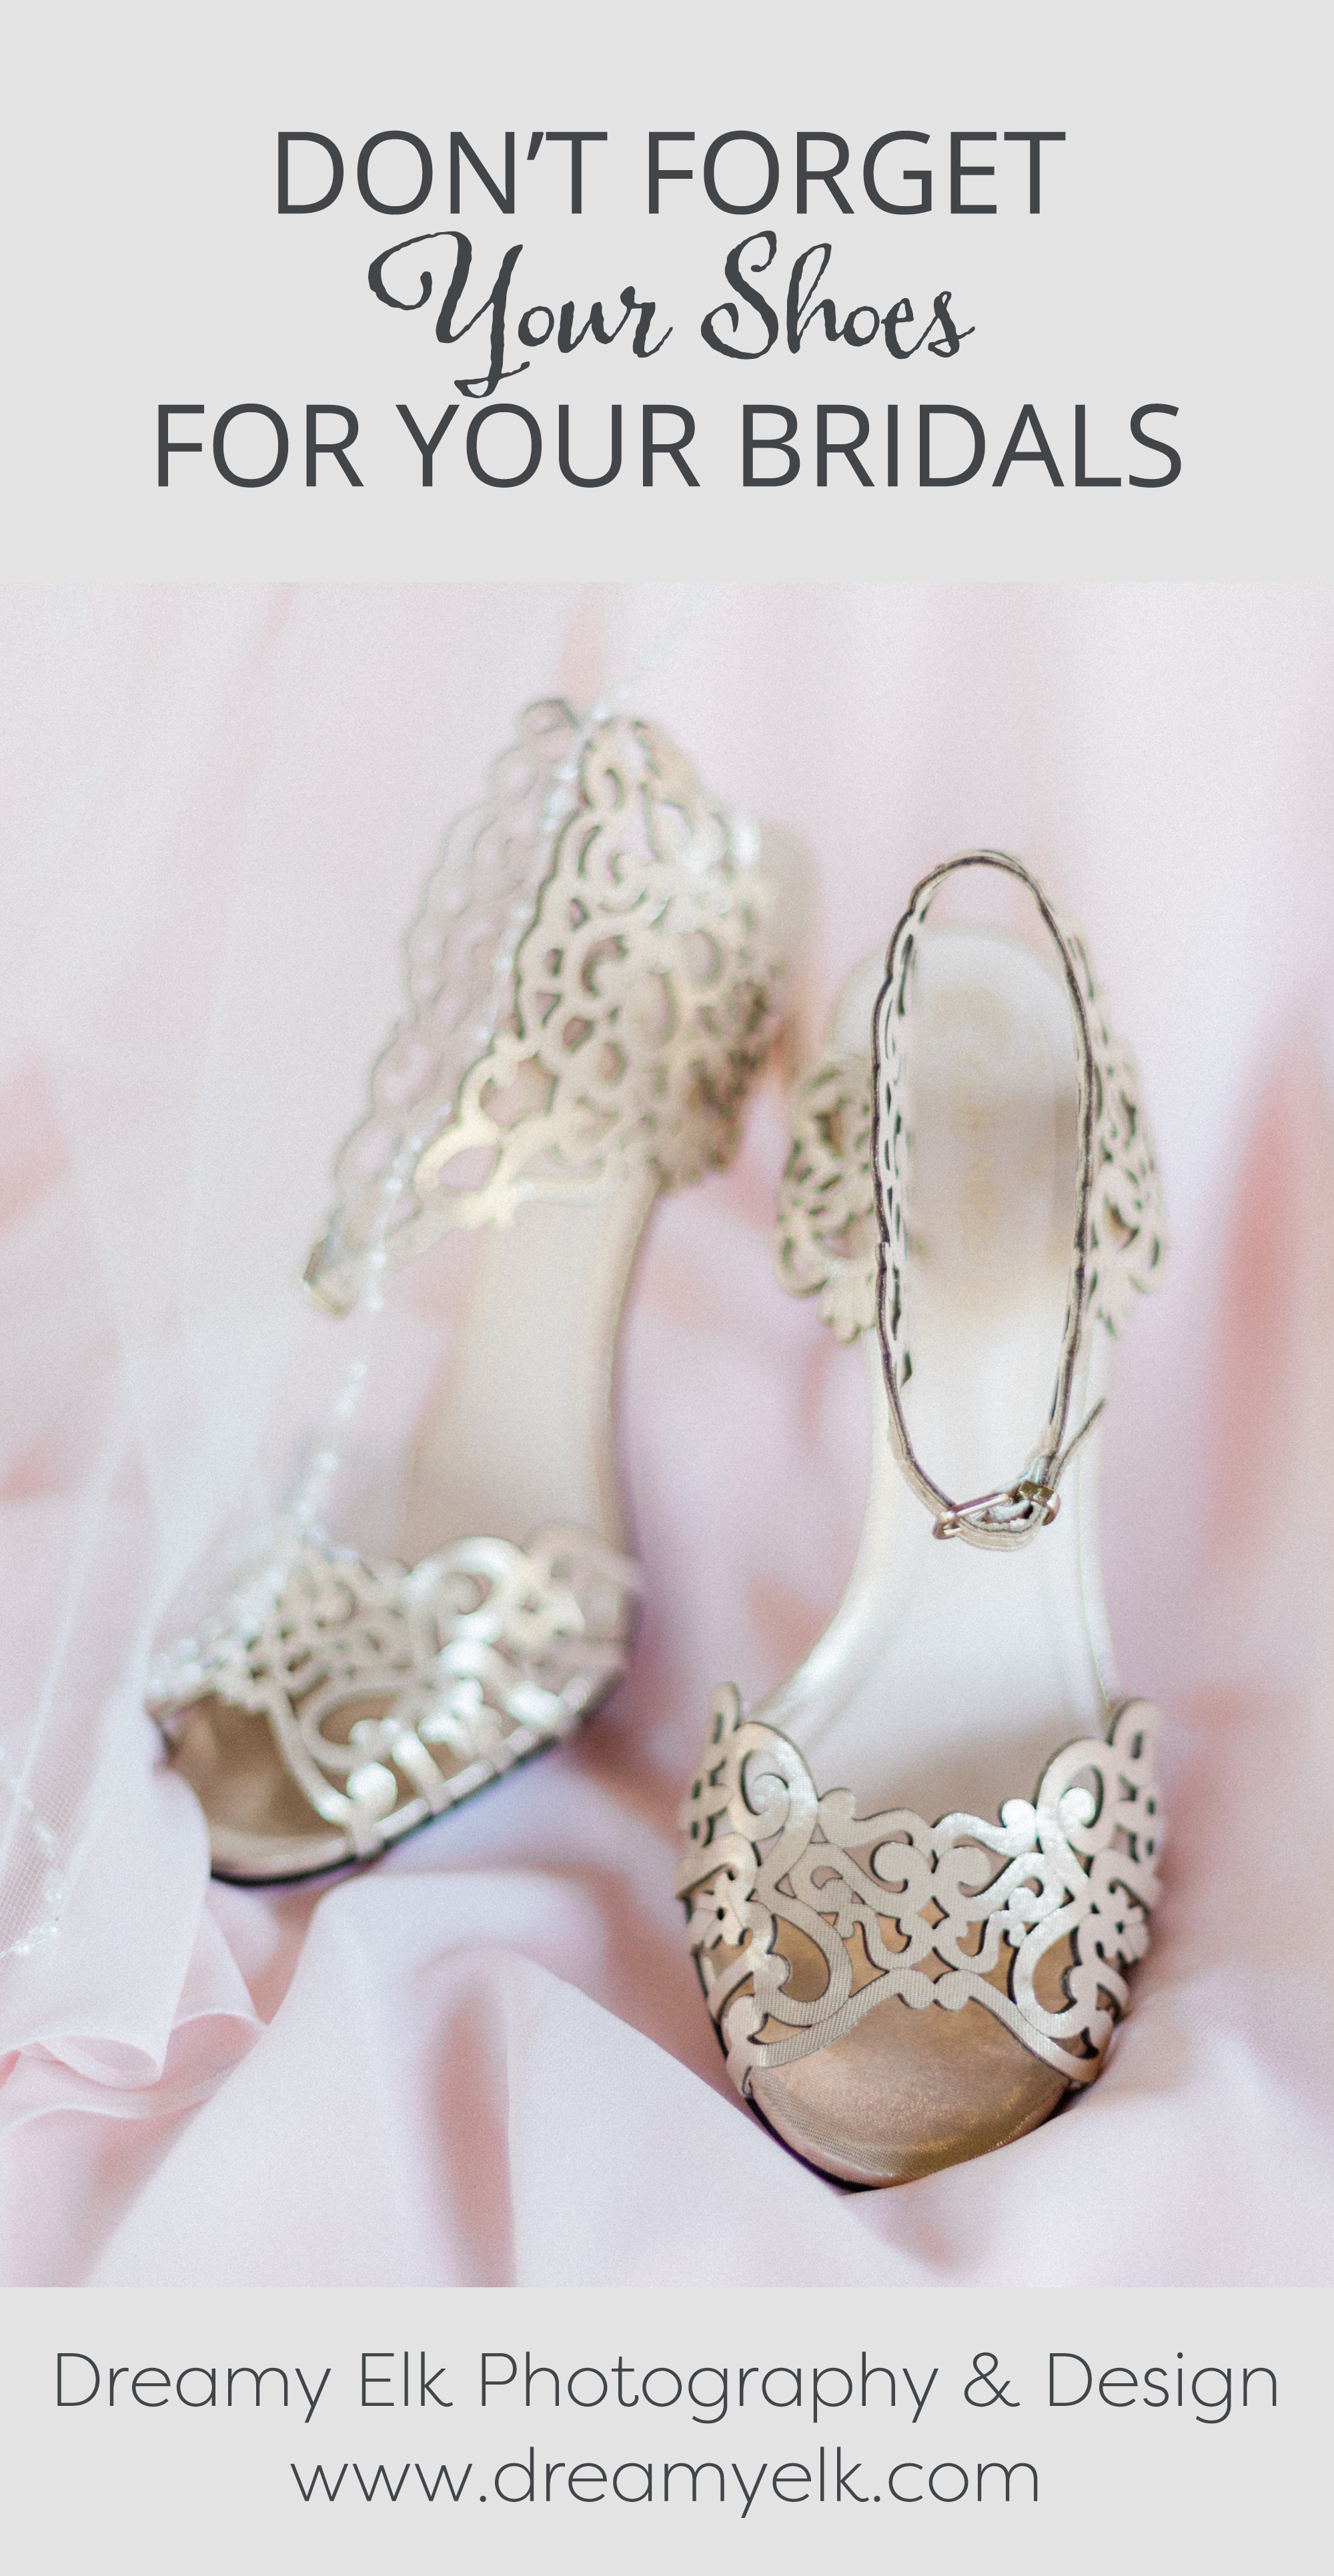 22 Unique Wedding Shoes Photo Ideas to Steal - Elegantweddinginvites.com  Blog